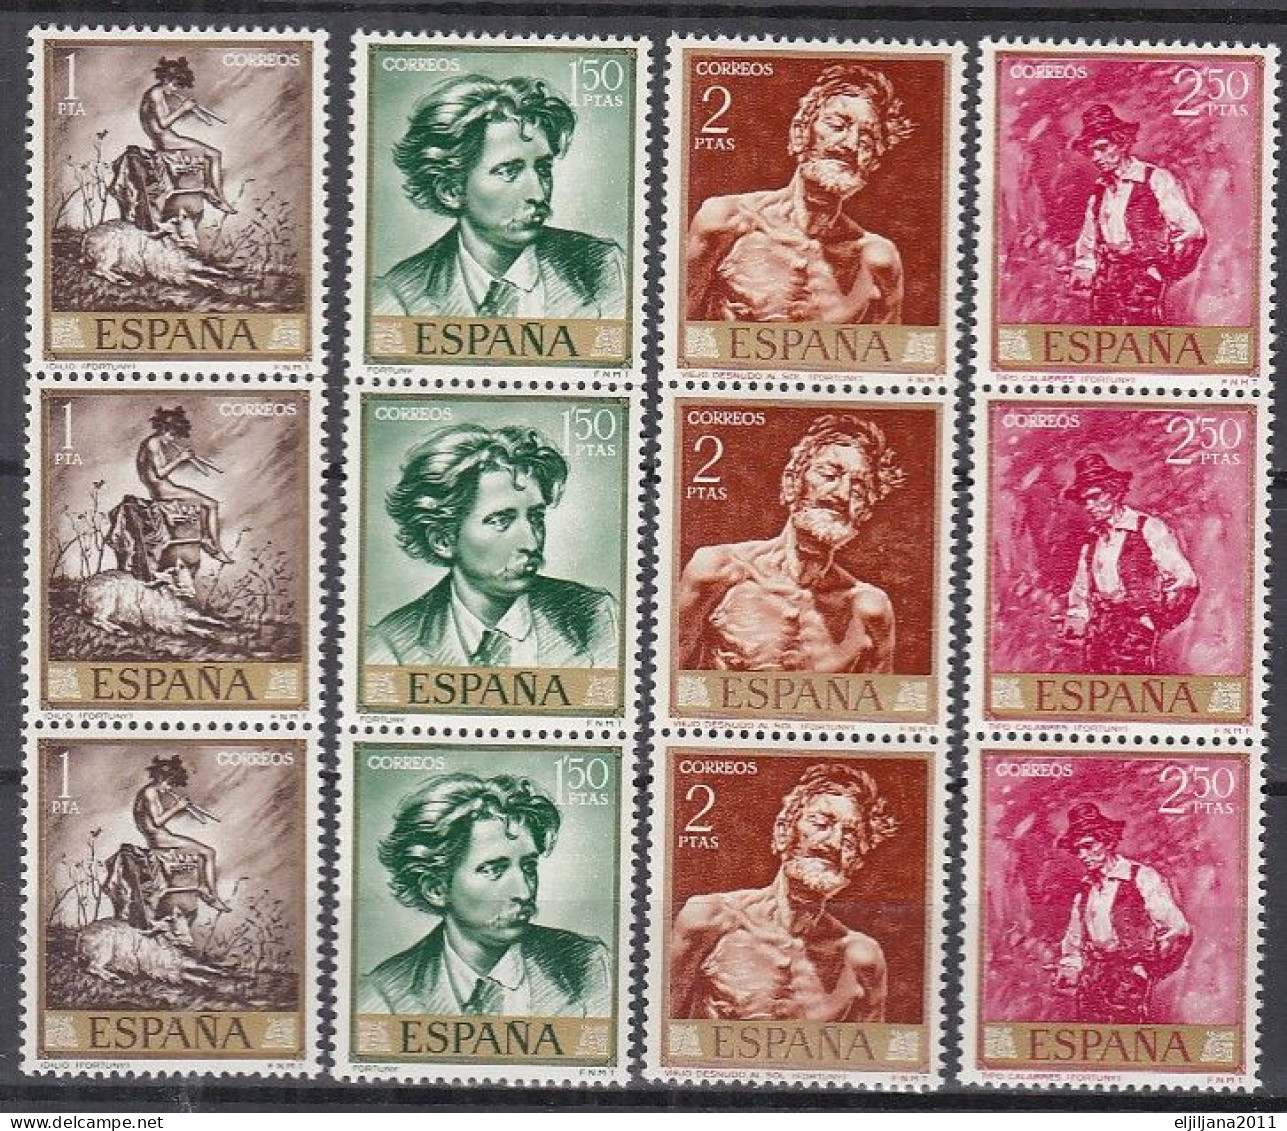 ⁕ SPAIN / ESPANA 1968 ⁕ Mariano Fortuny (stamp Day) Art Painting Gemalde Mi.1740-1749 ⁕ MNH ( 43 Stamps ) - Ongebruikt